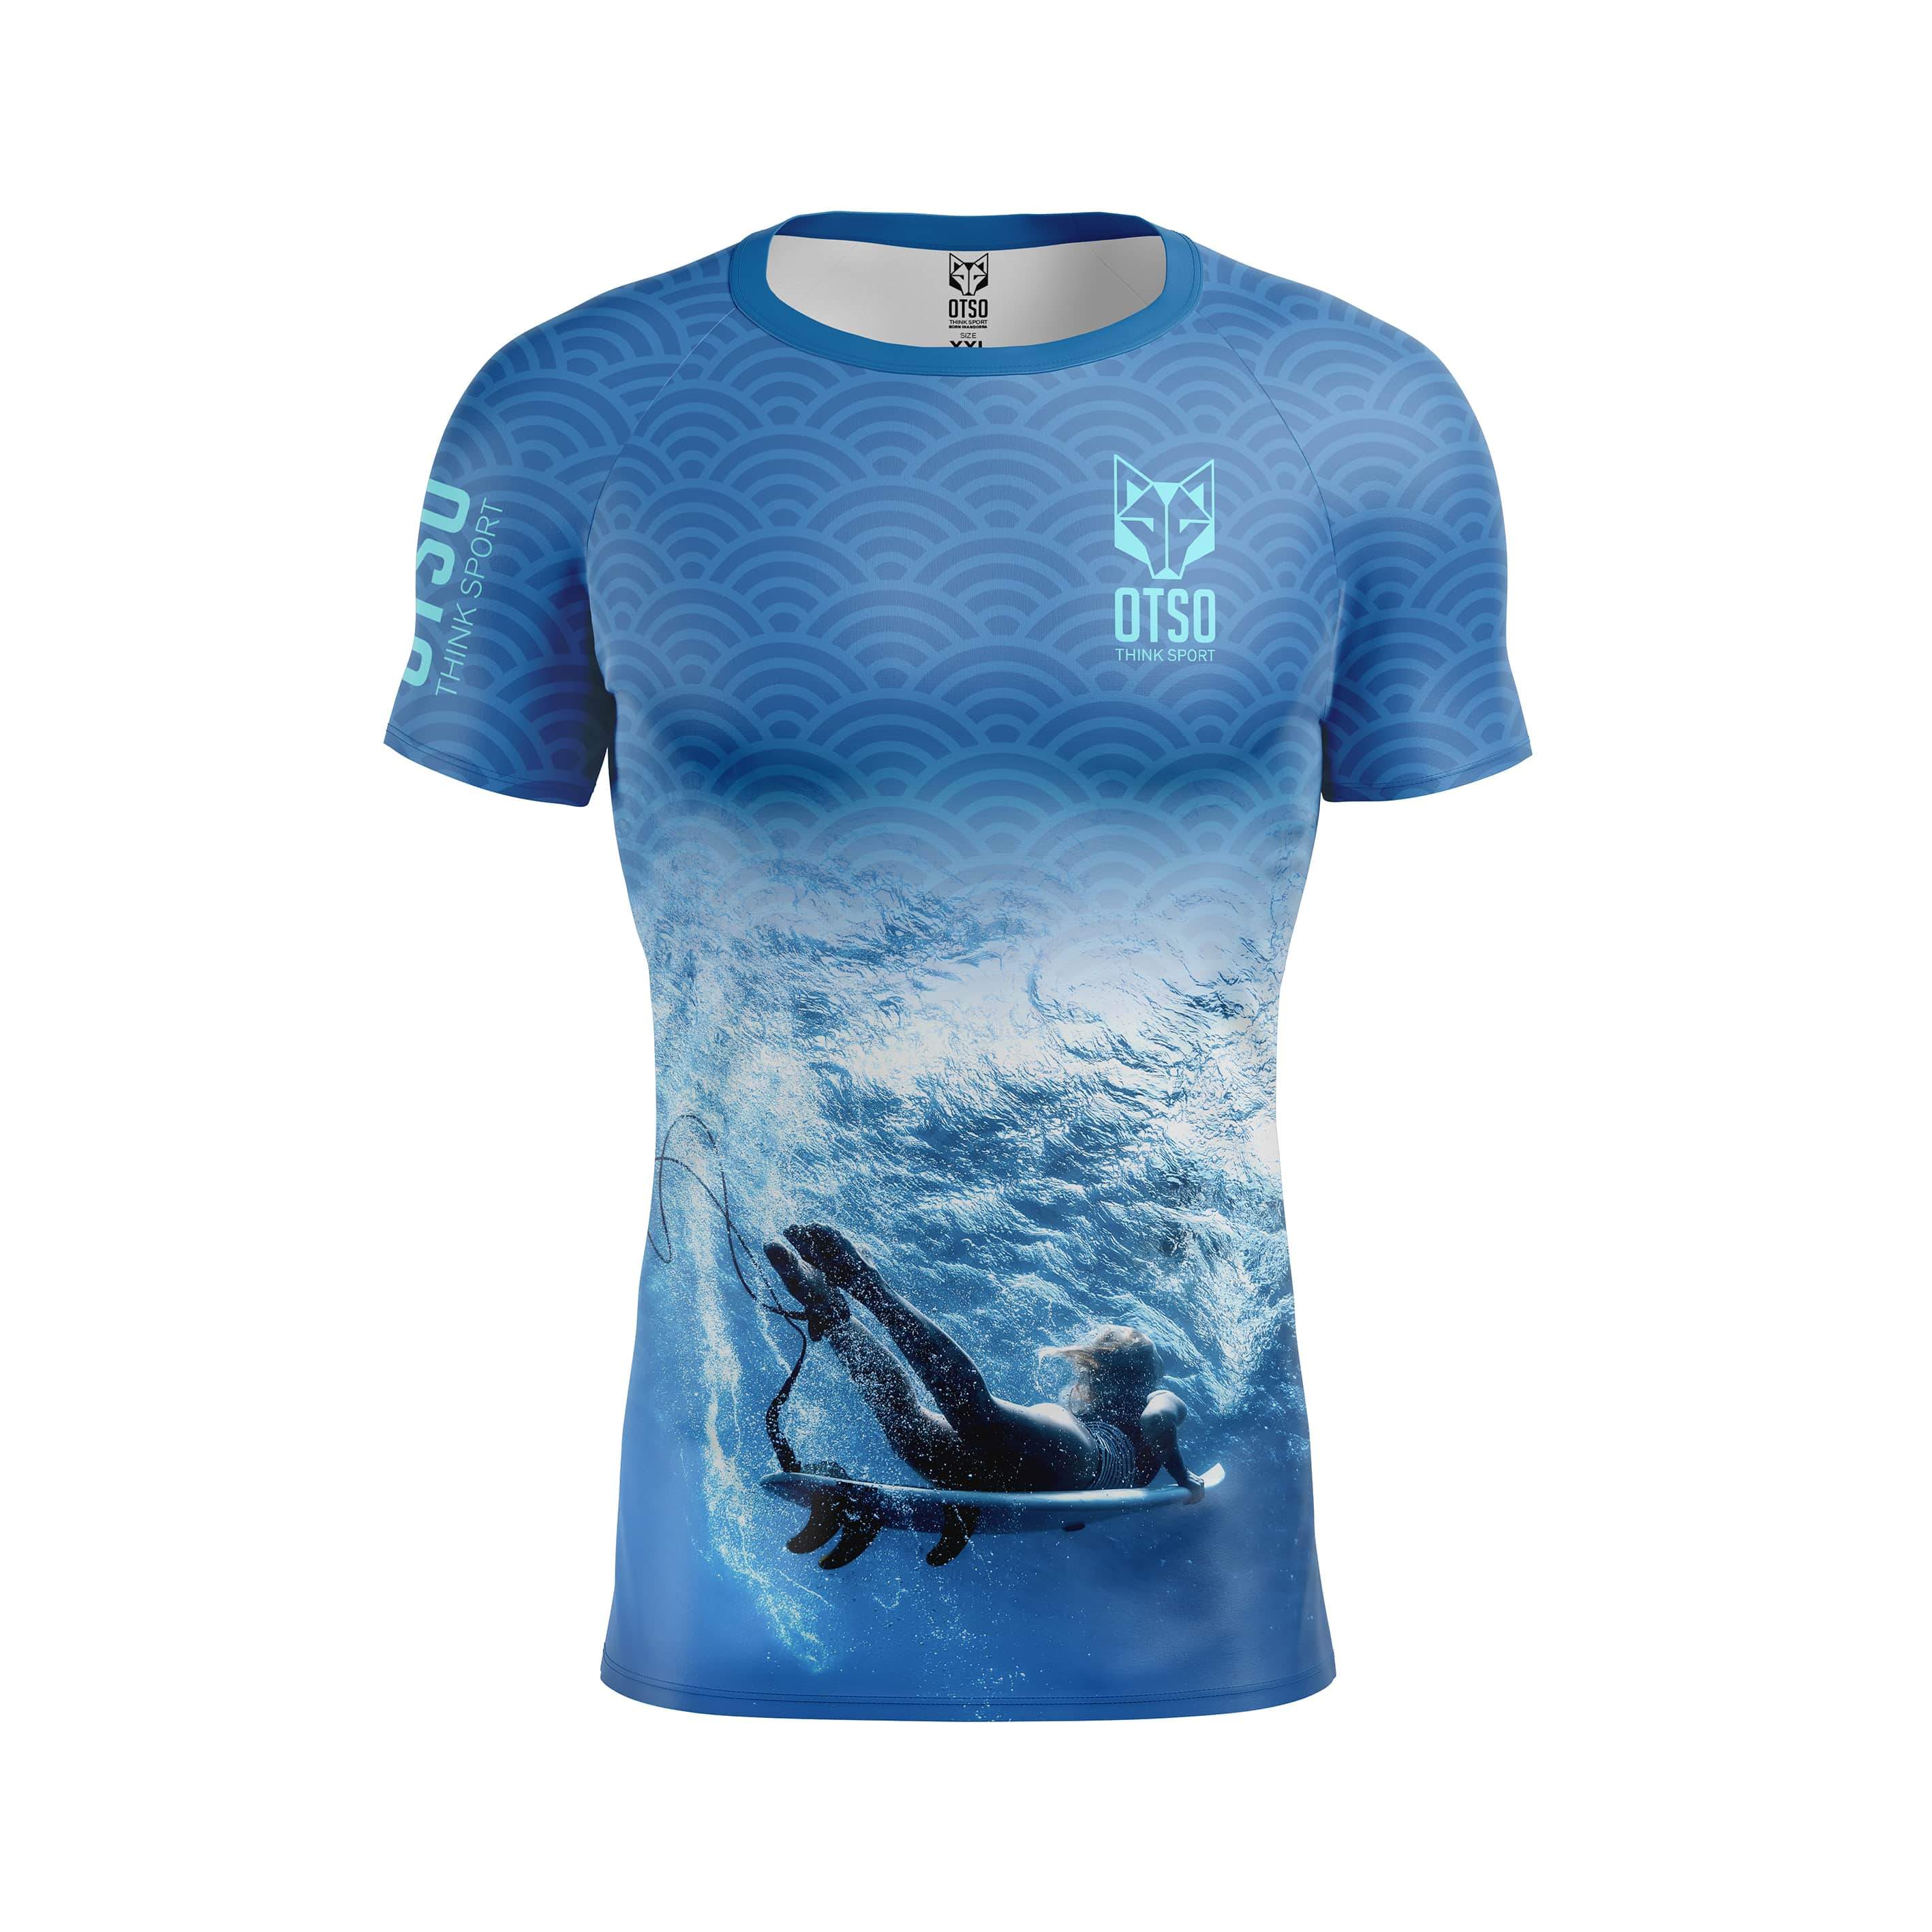 T-shirt De Surf Para Homem M/curto Otso - azul - 